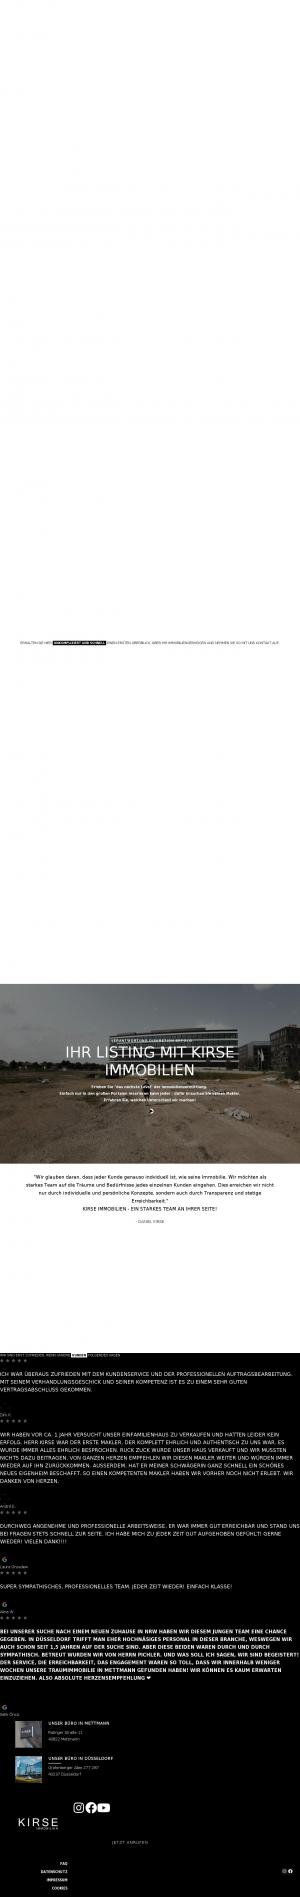 www.kirseimmobilien.de